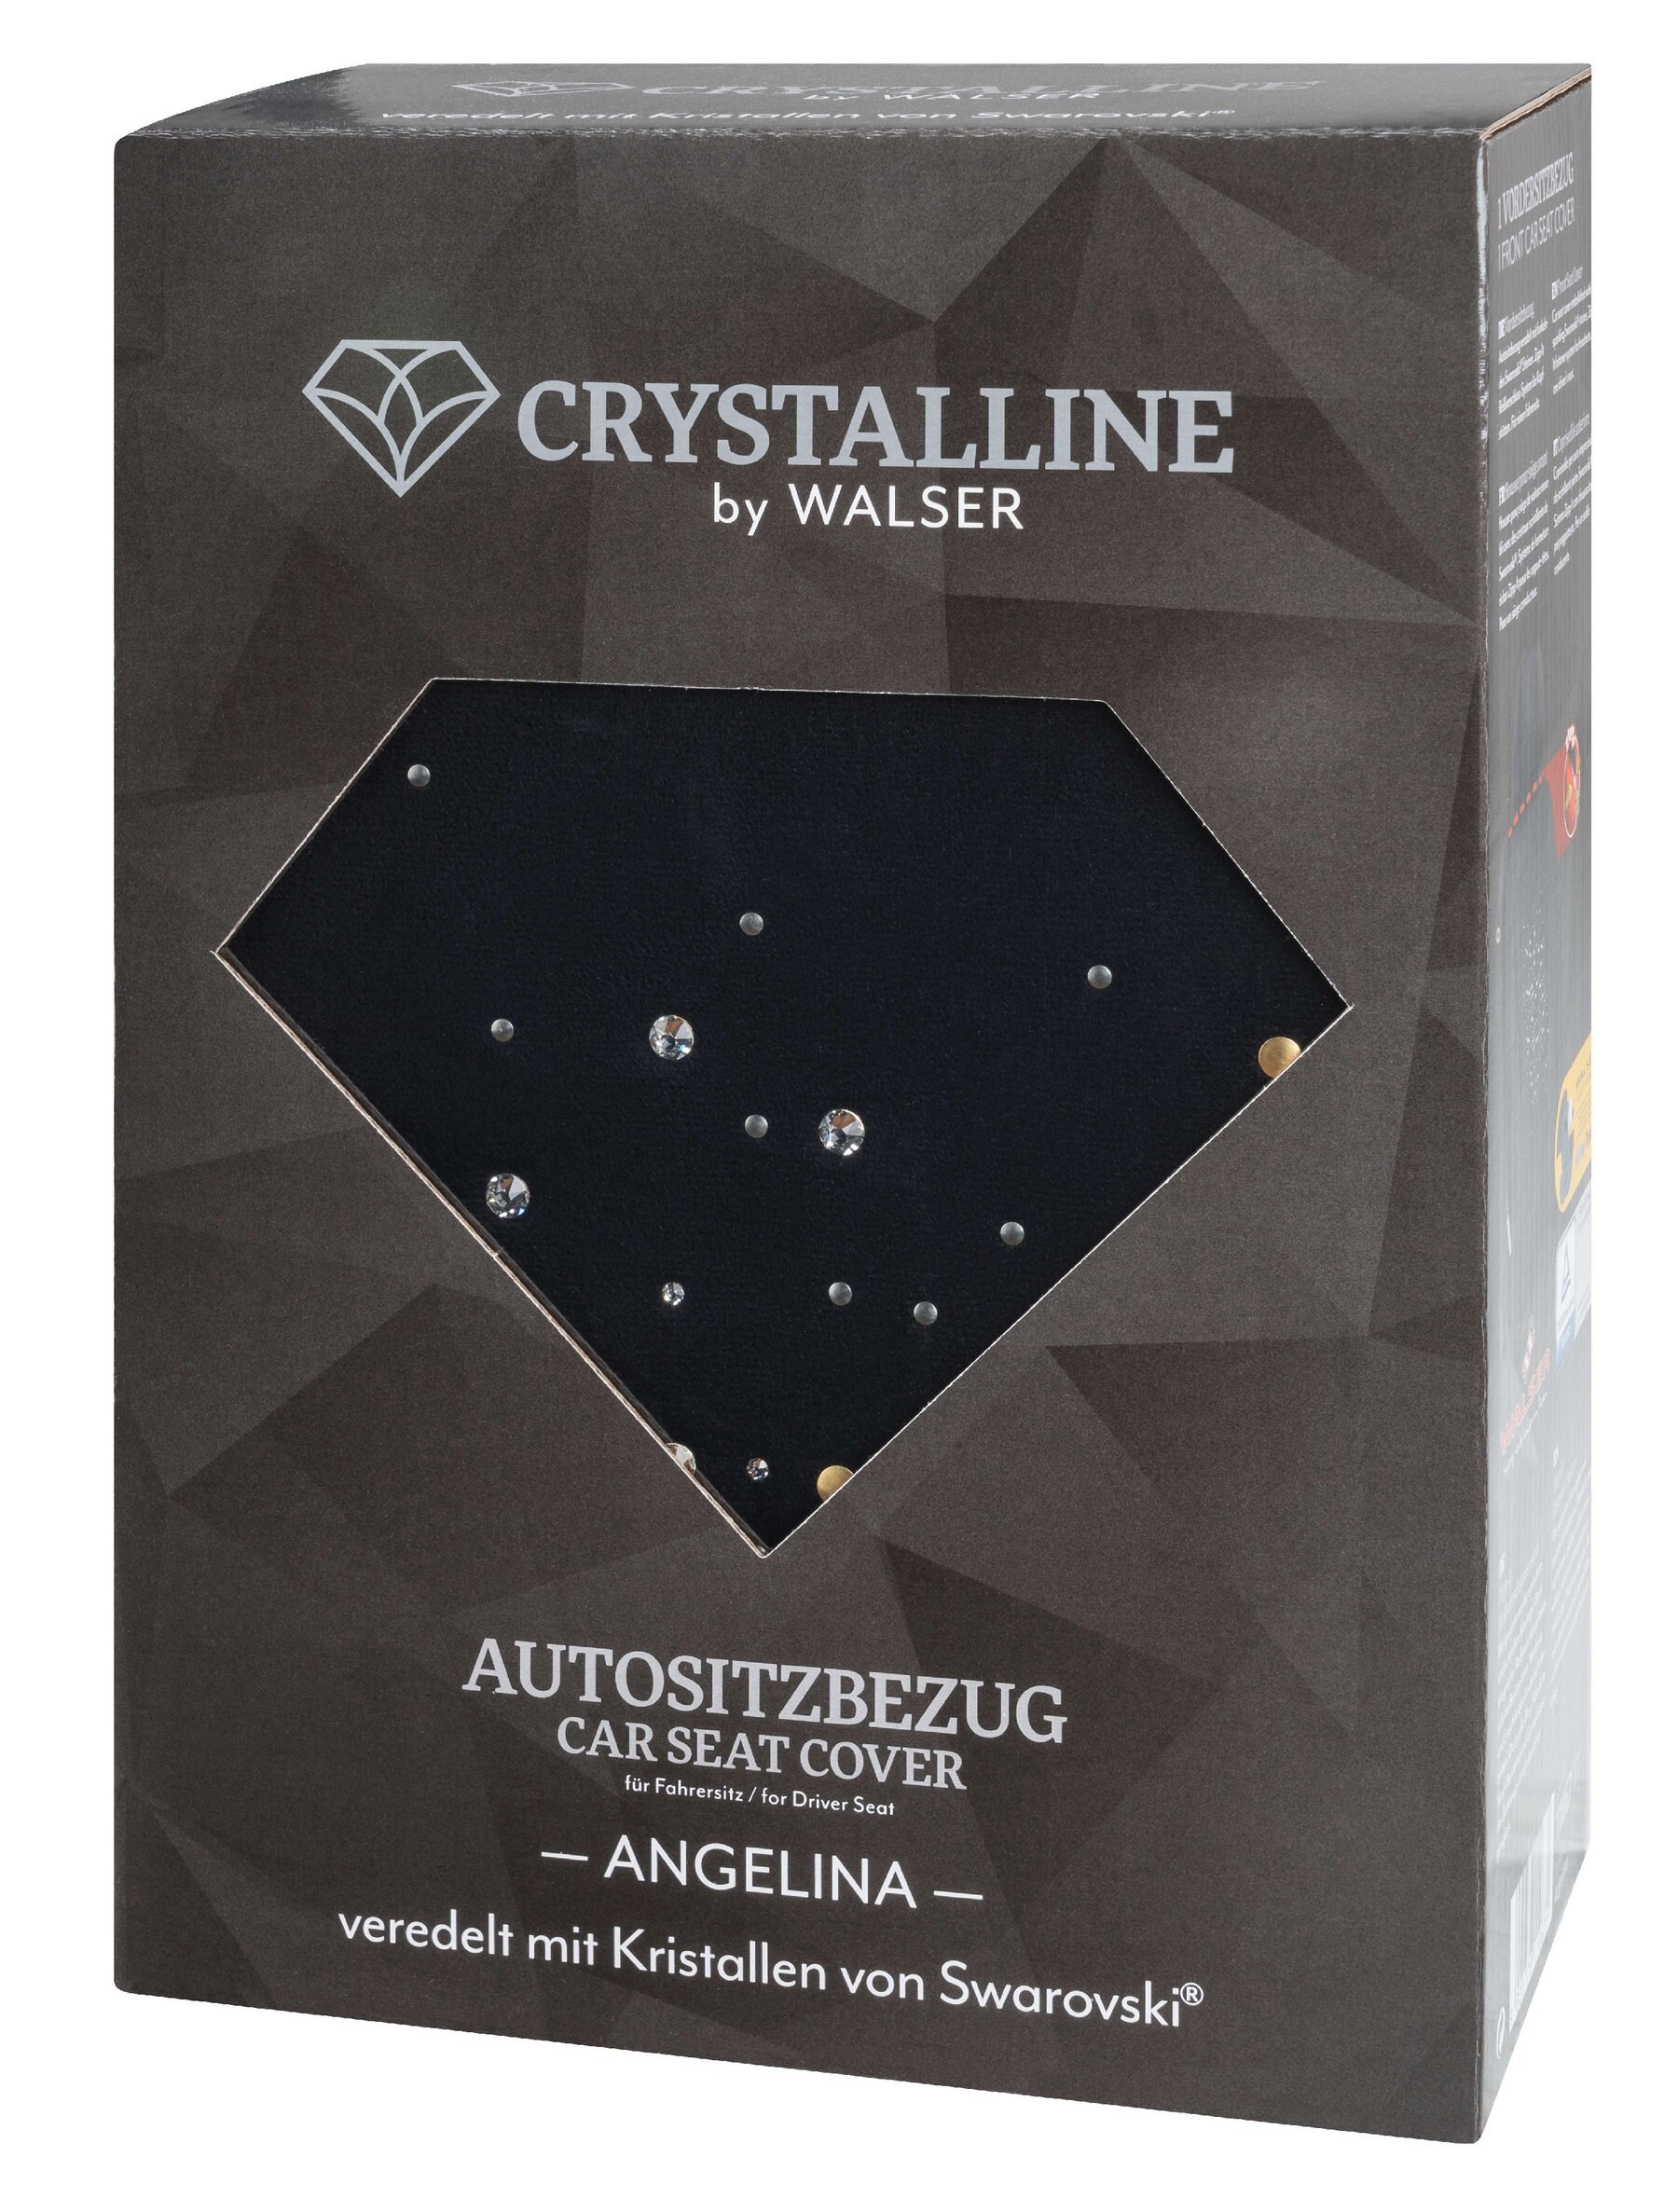 Autositzbezug Angelina verziert mit Kristallen von Swarovski® für einen Vordersitz